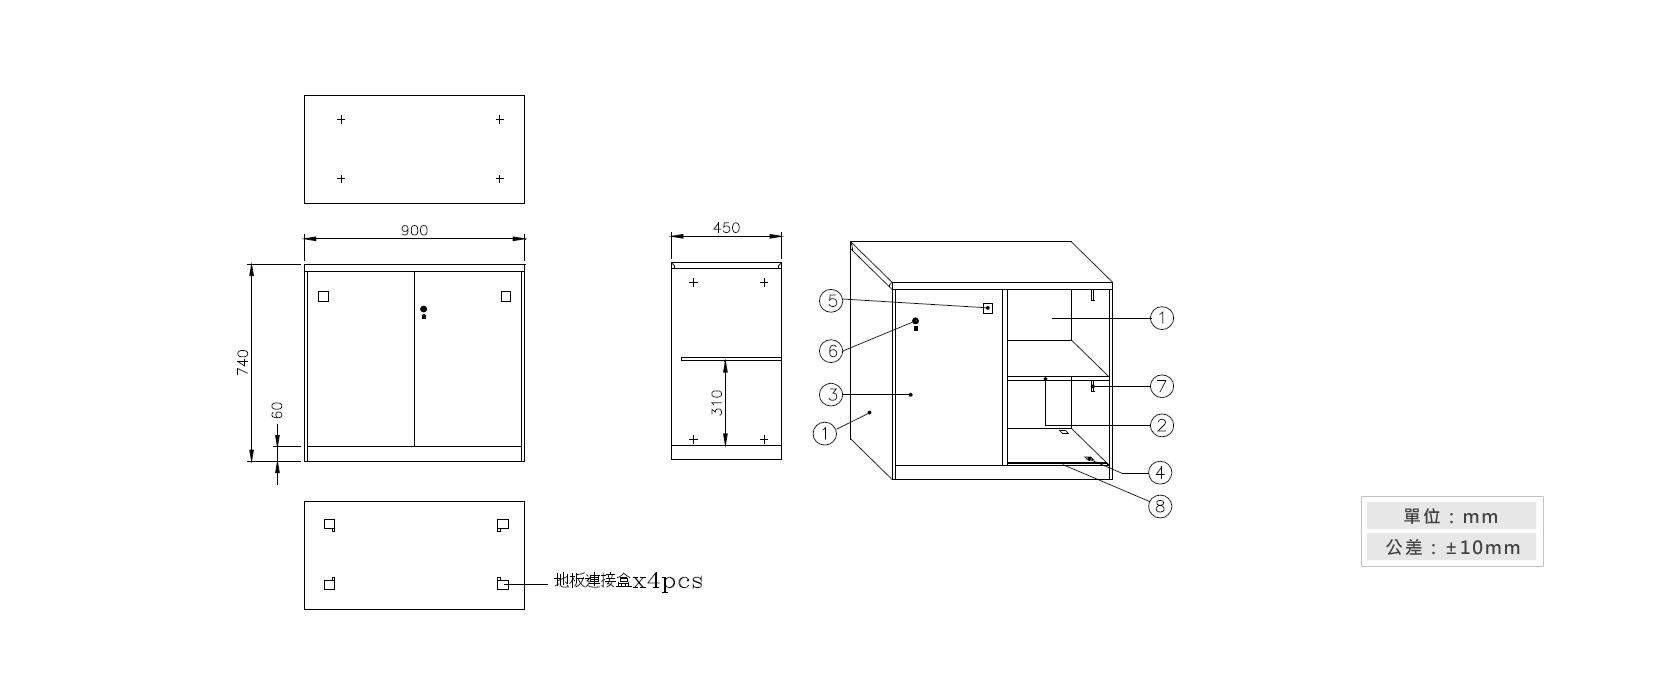 3-14 鐵拉門下置式鋼製公文櫃材質說明